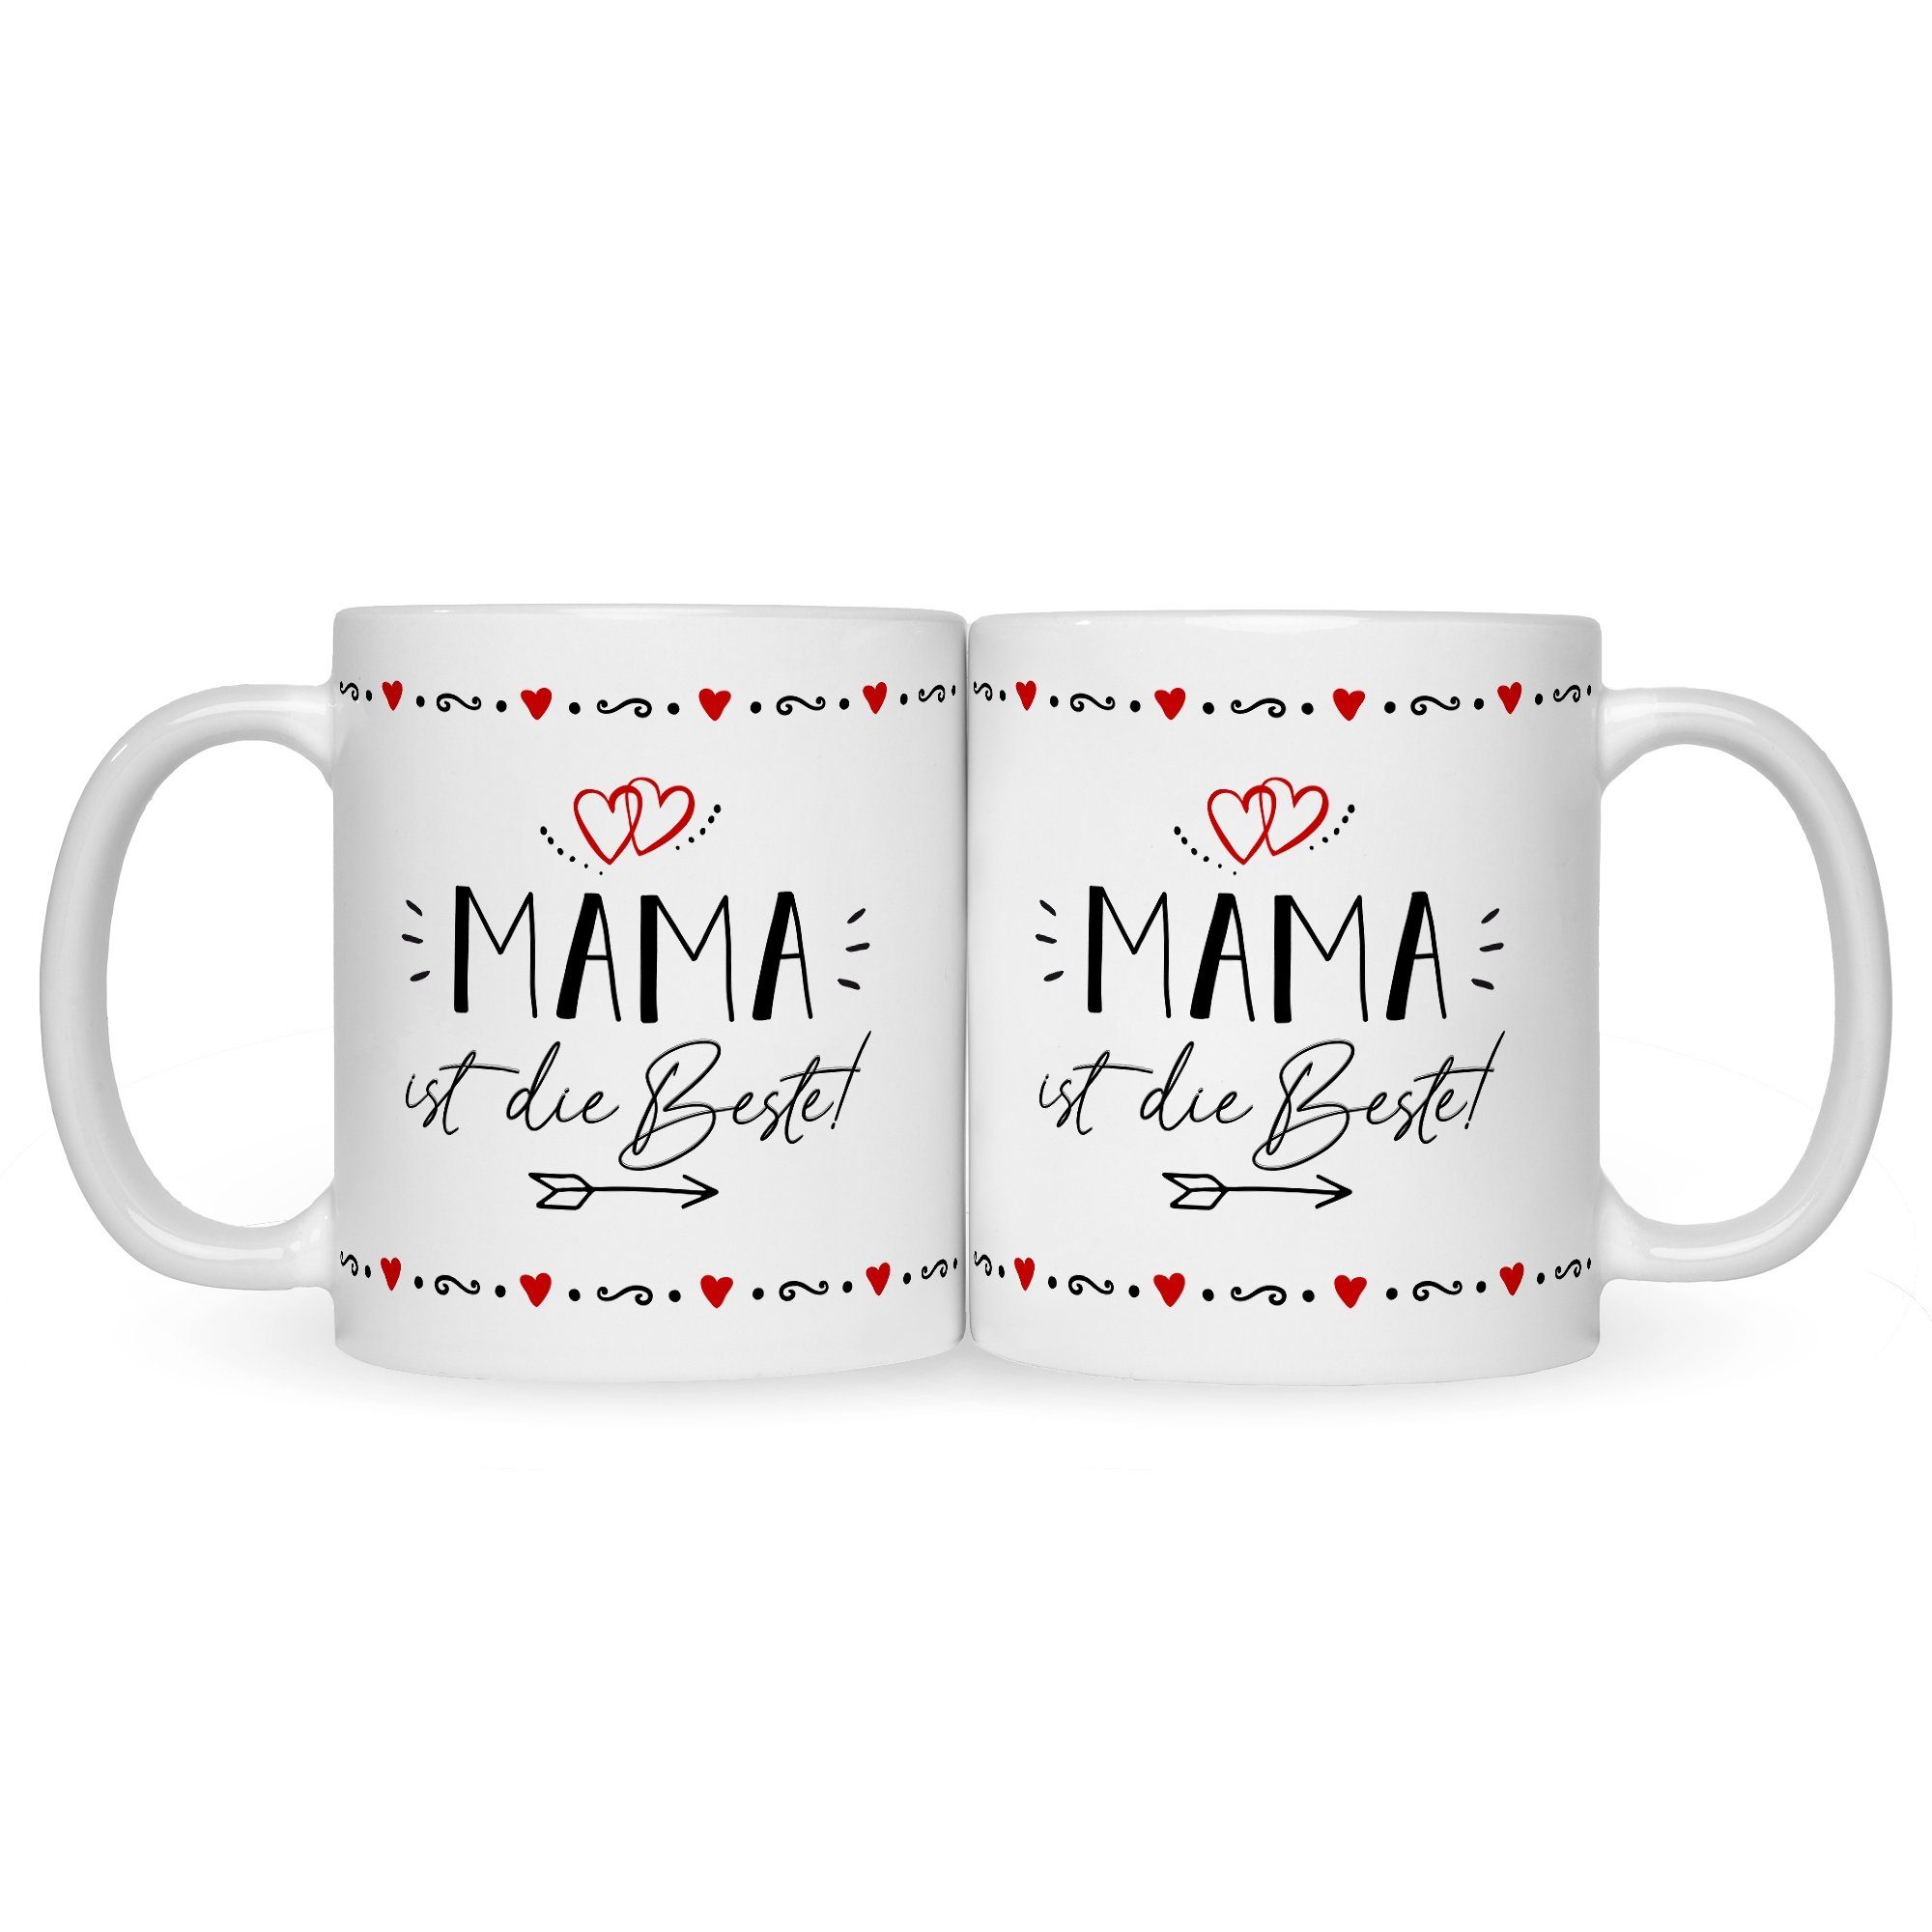 GRAVURZEILE Tasse Bedruckte Tasse Mama Frauen Sie Beste! für Herzliche mit Weiß - Weihnachten Geschenk für - zum Muttertag - Geburtstag Spruch Mama die Geschenke Valentinstag - ist für